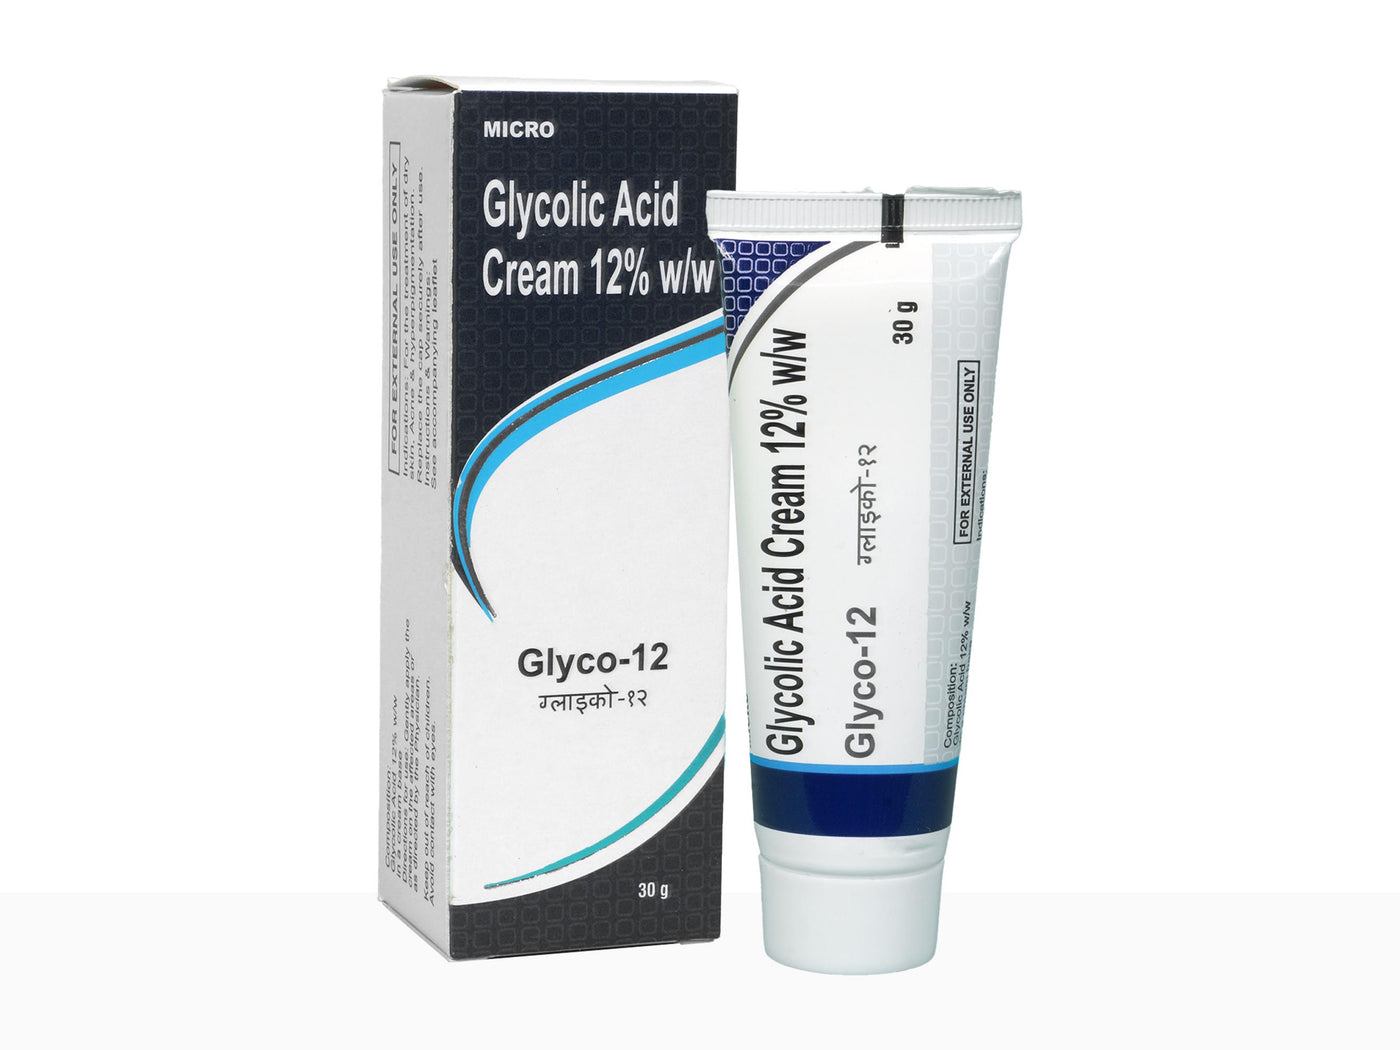 Glyco-12 cream - Clinikally